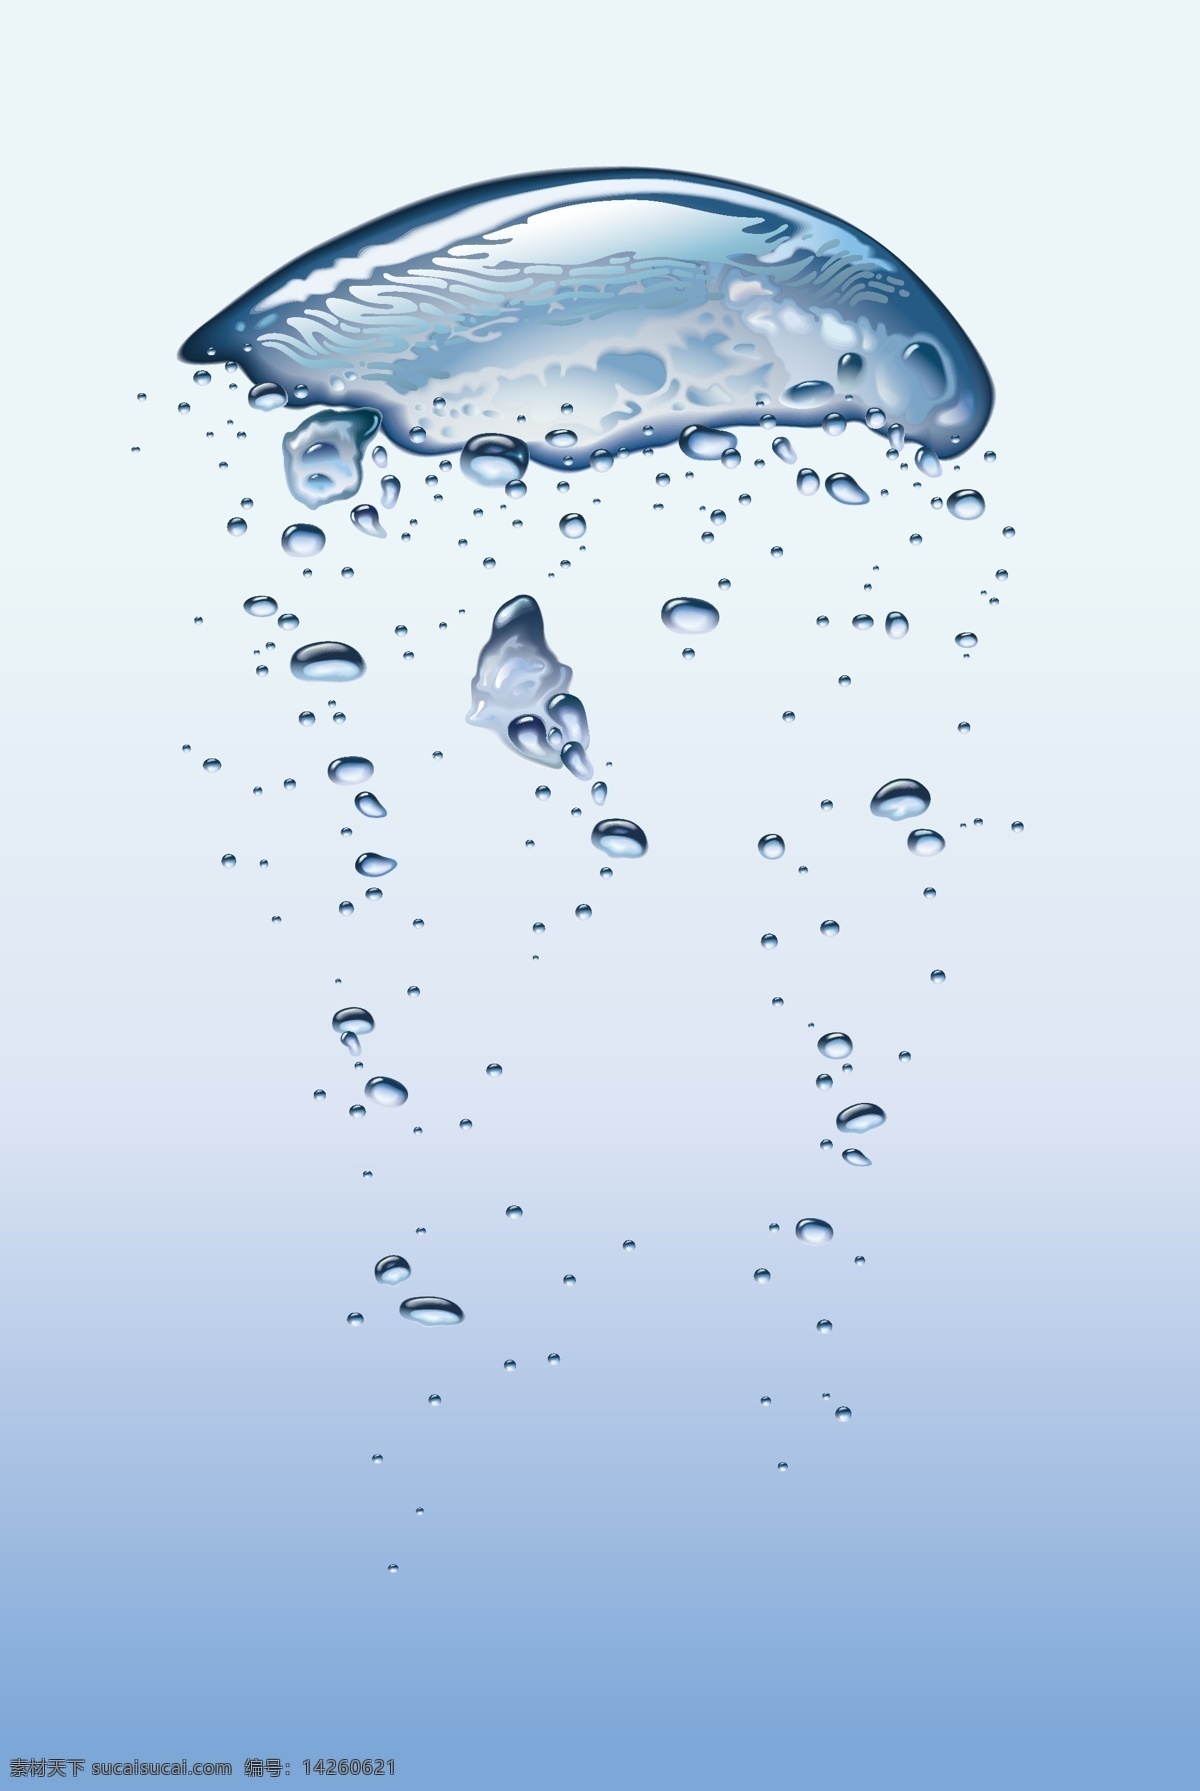 蓝色水母 水 水母 水泡 泡泡 蓝色 设计素材 文化艺术